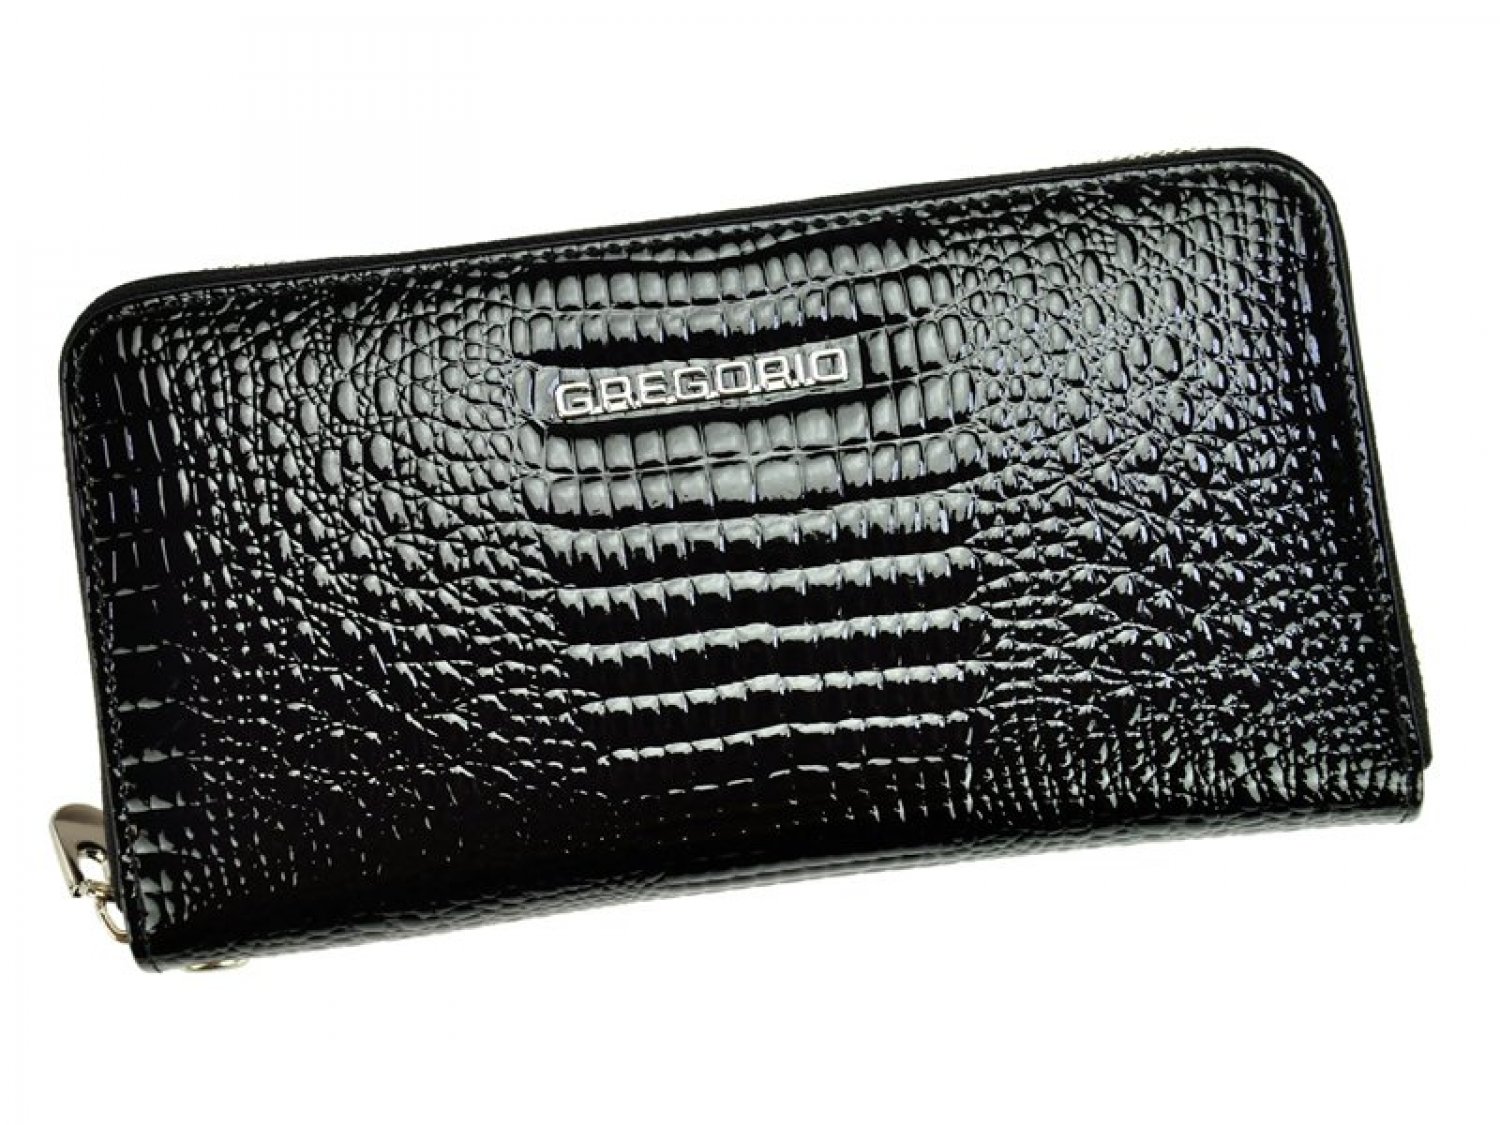 Elegantní dámská kožená peněženka s hadím vzorem Laurenn, černá